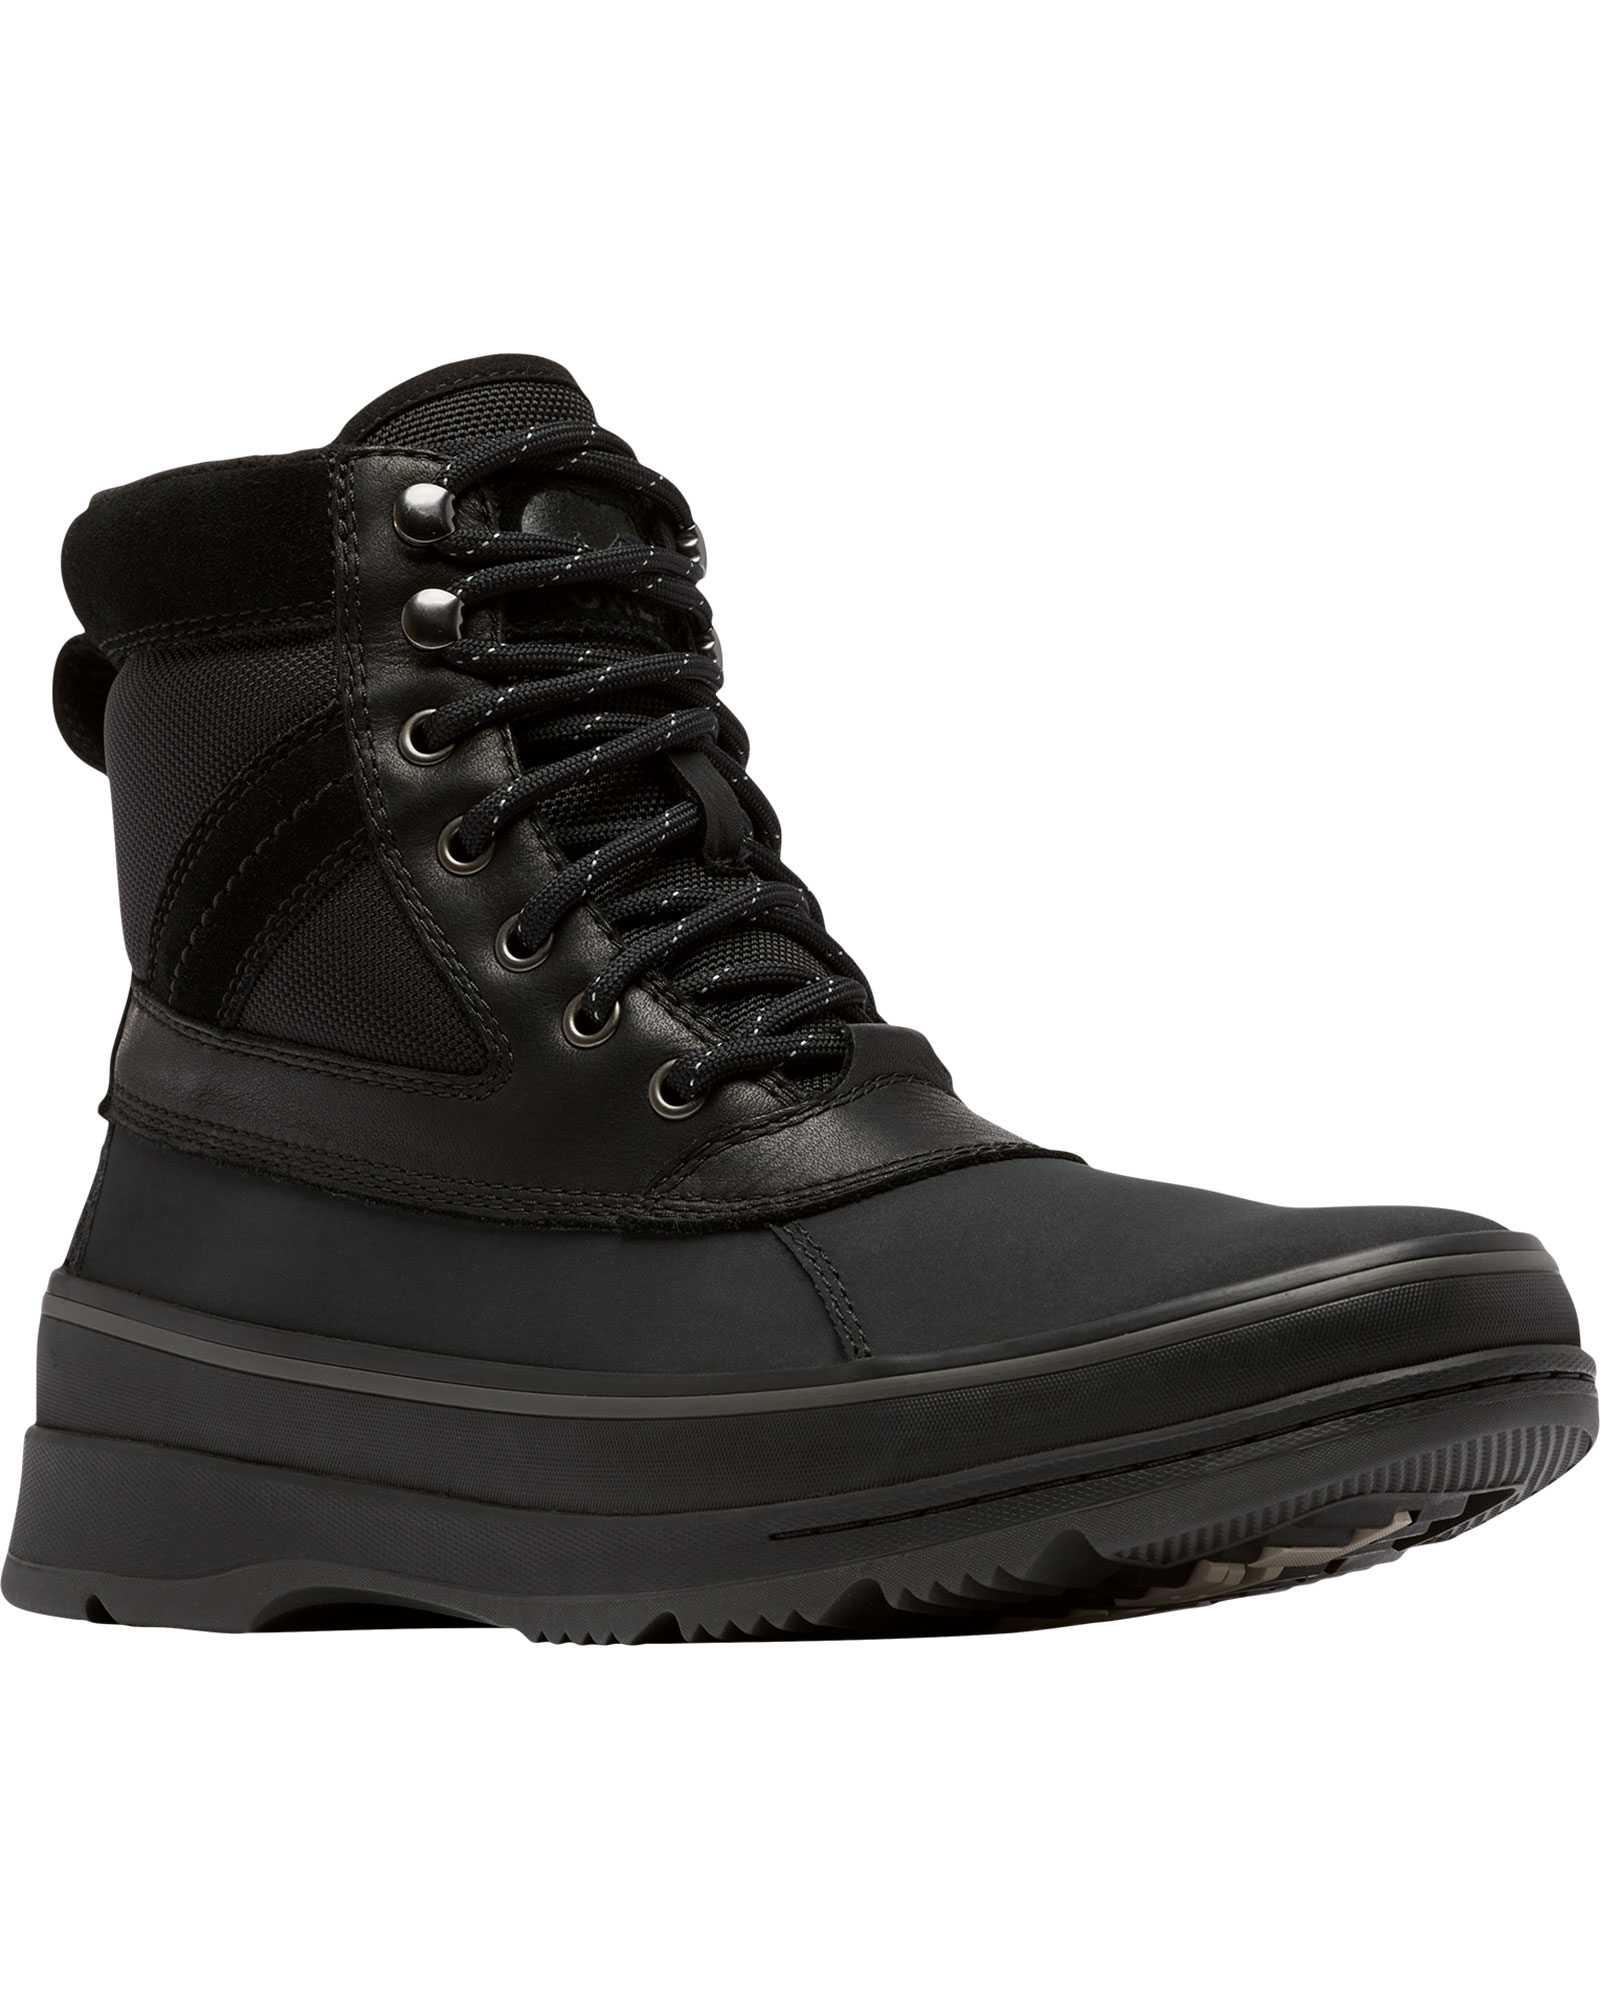 Sorel Ankeny II Waterproof Men’s Boots - Black/Jet UK 12